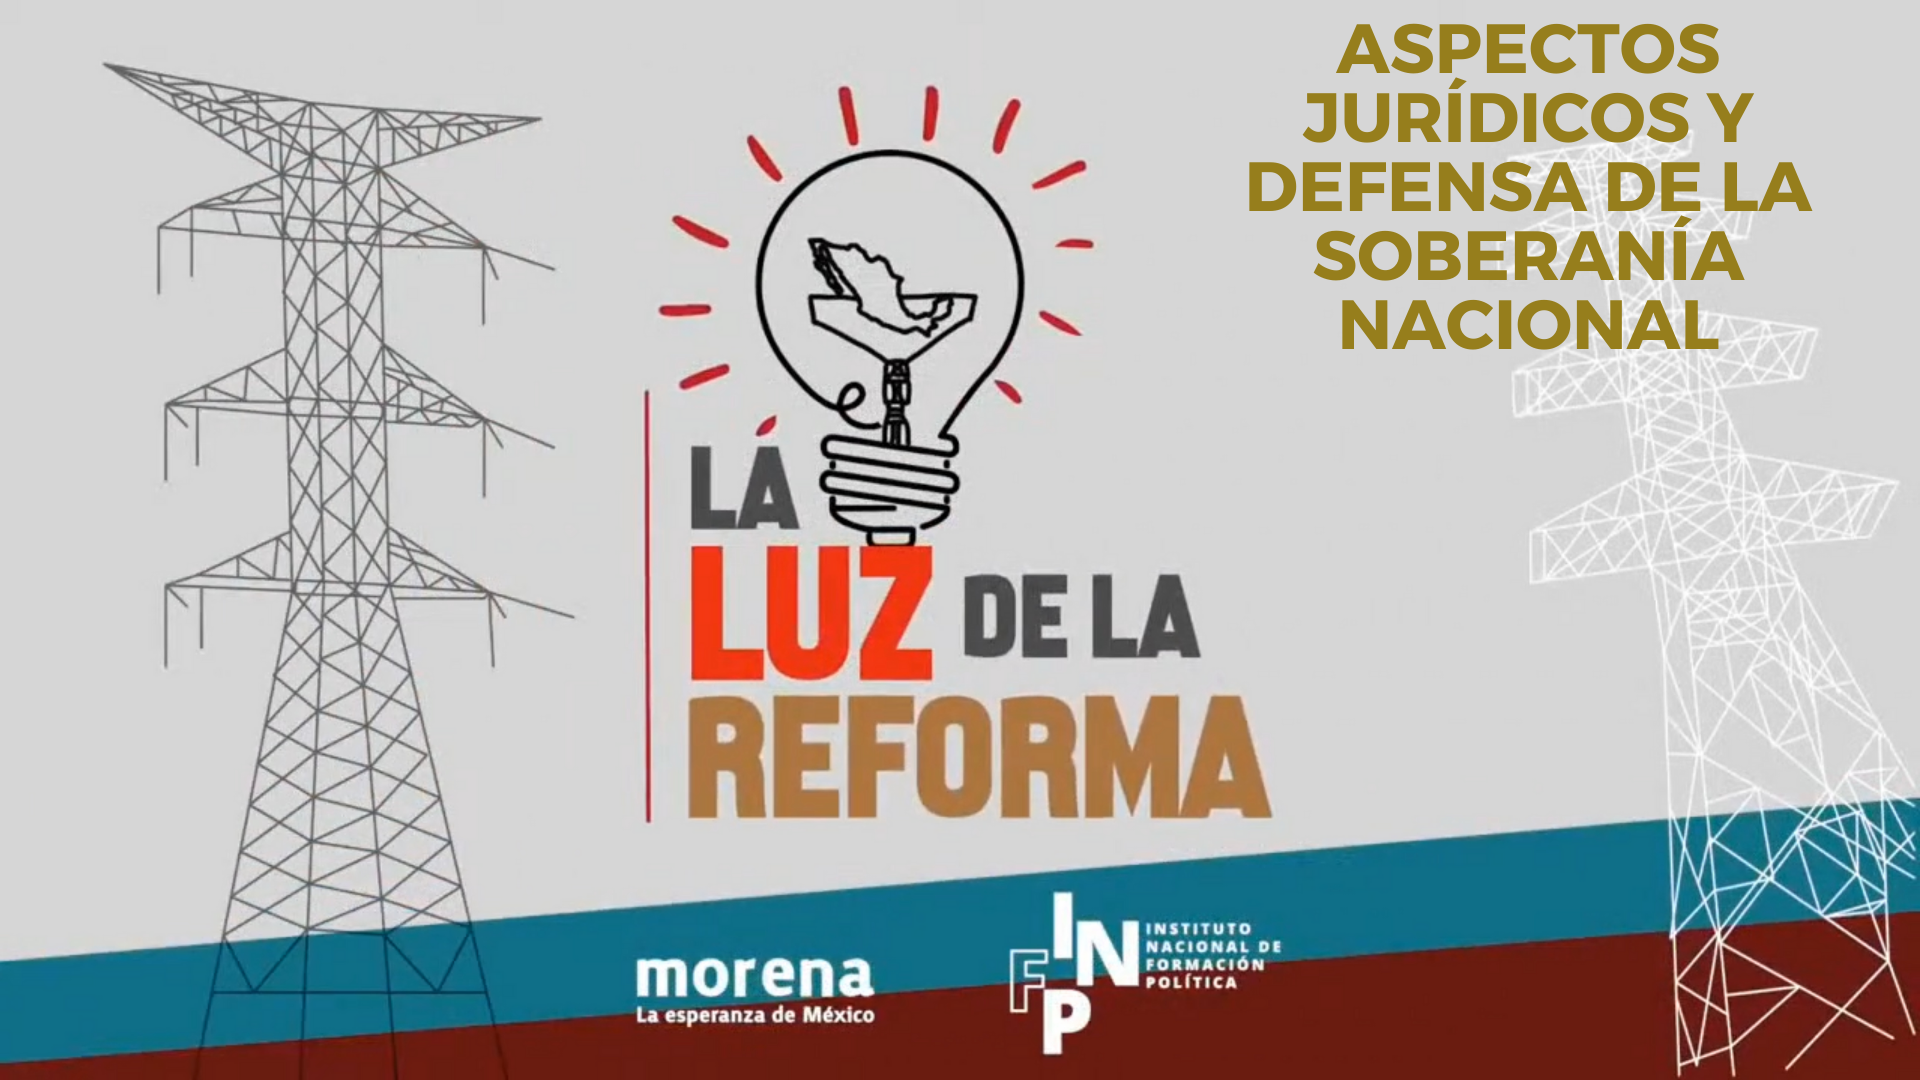 La Luz de la Reforma – Aspectos Jurídicos y Defensa de la Soberanía Nacional